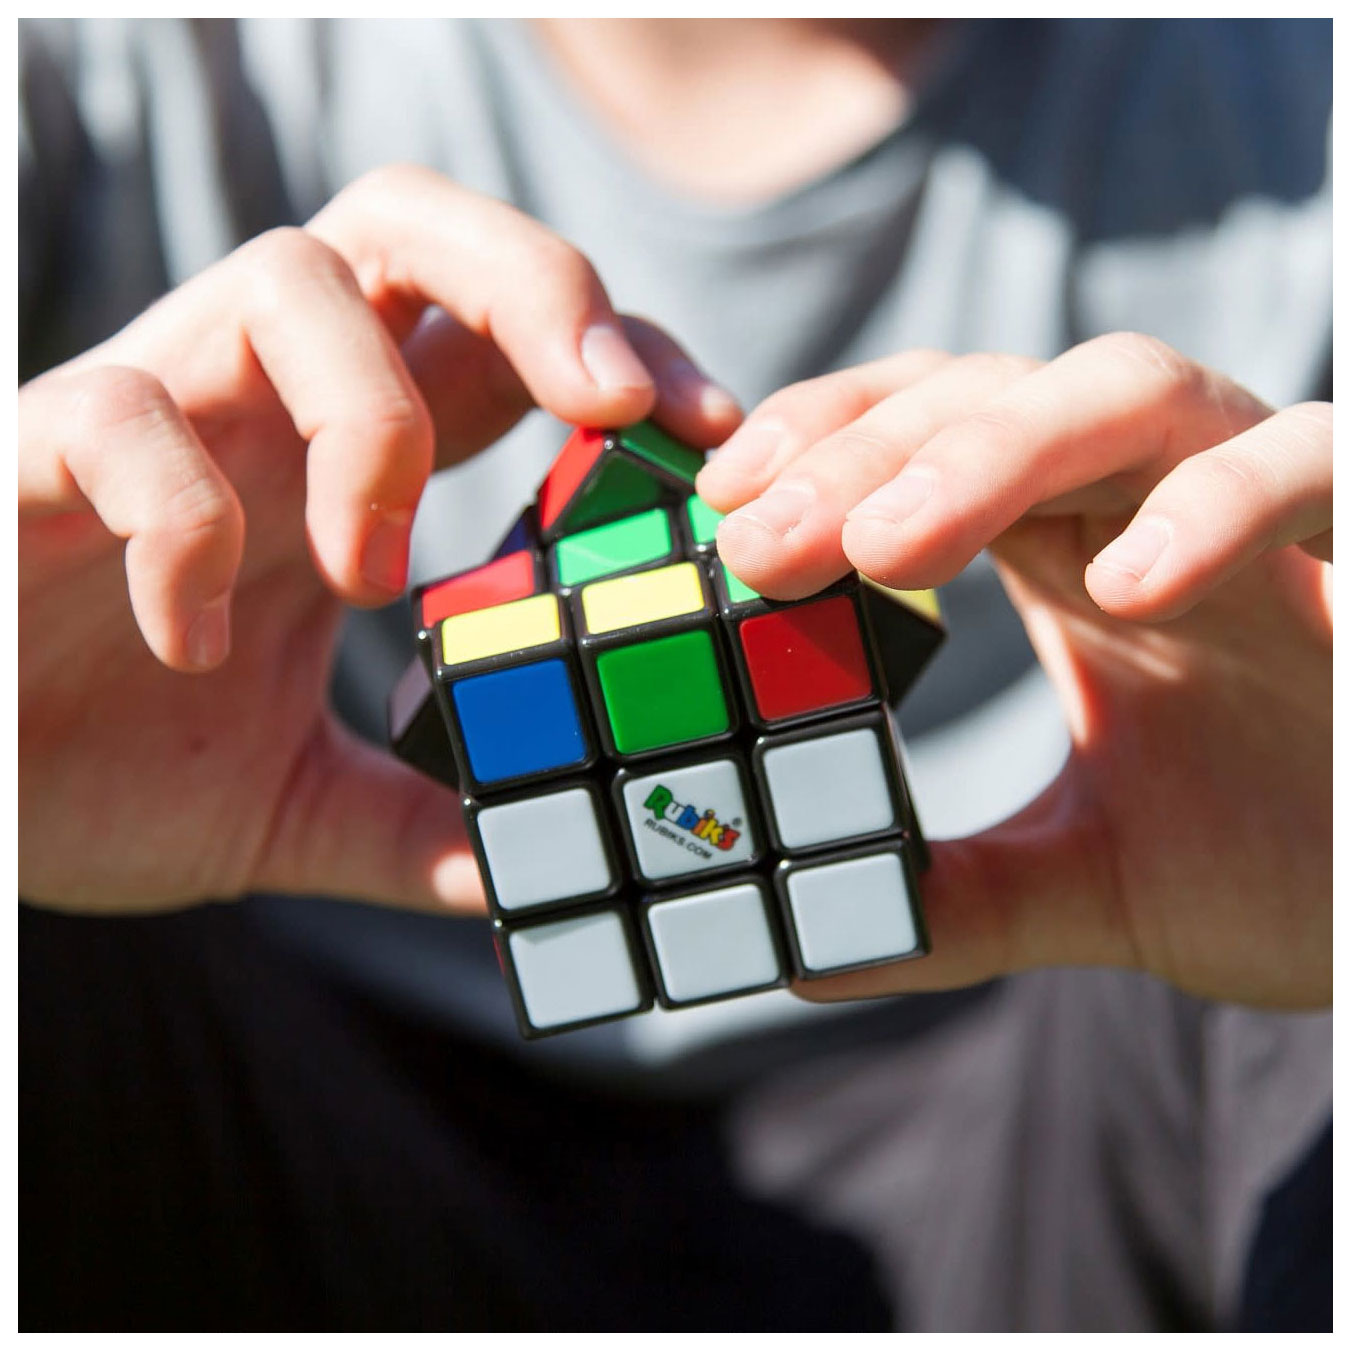 Rubik's Family Pack (3x3, 2x2) Breinpuzzel Sleutelhanger